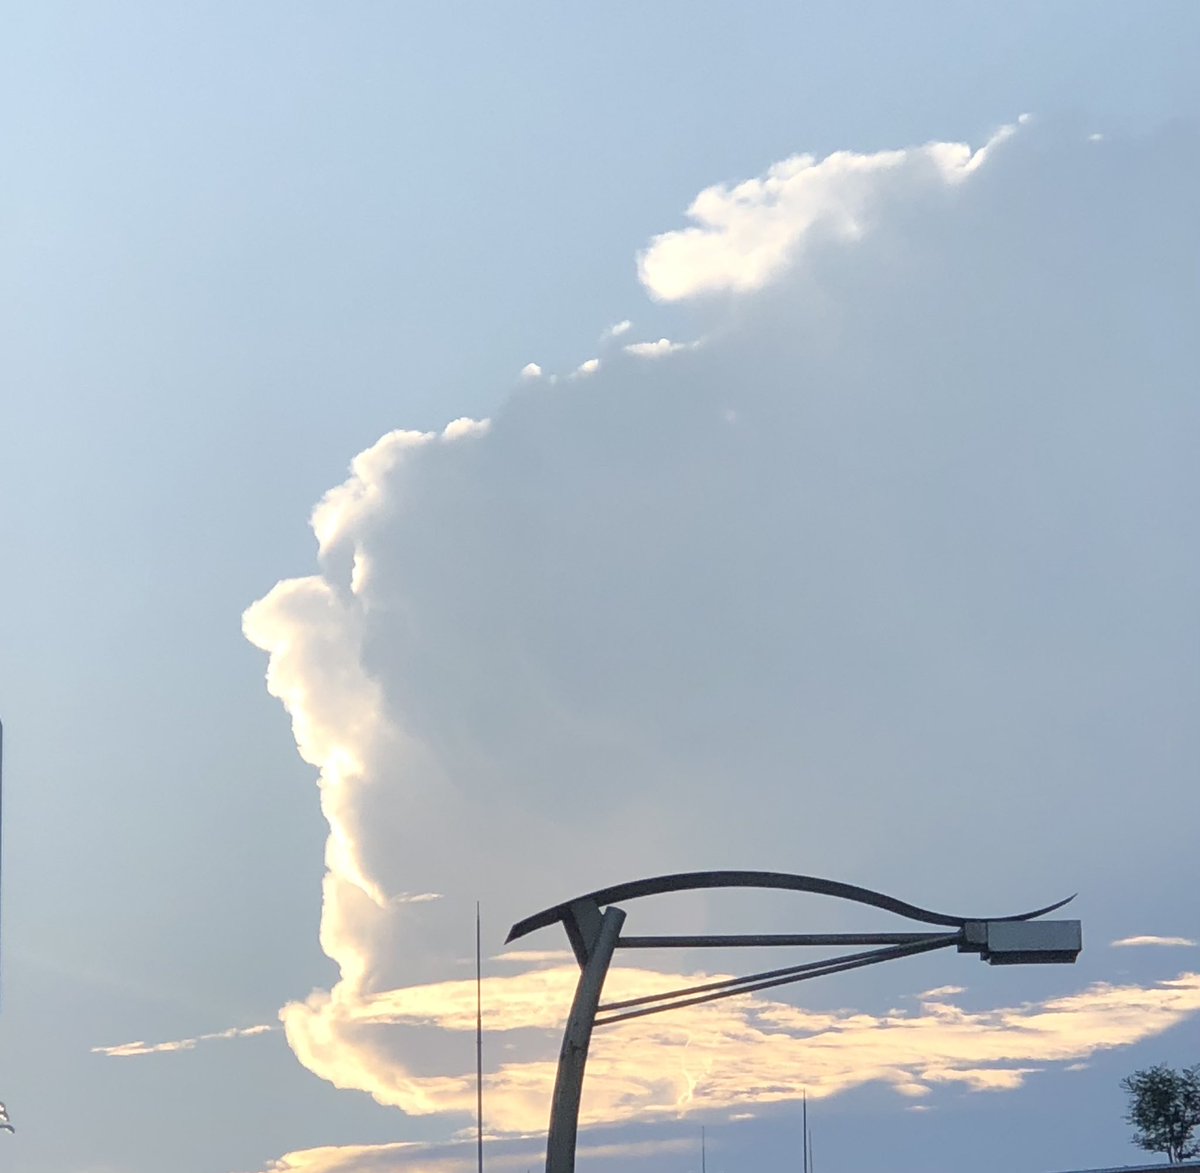 さっき見た雲☁️
こんな「おおおおおぉぉぉ…」に見えた 